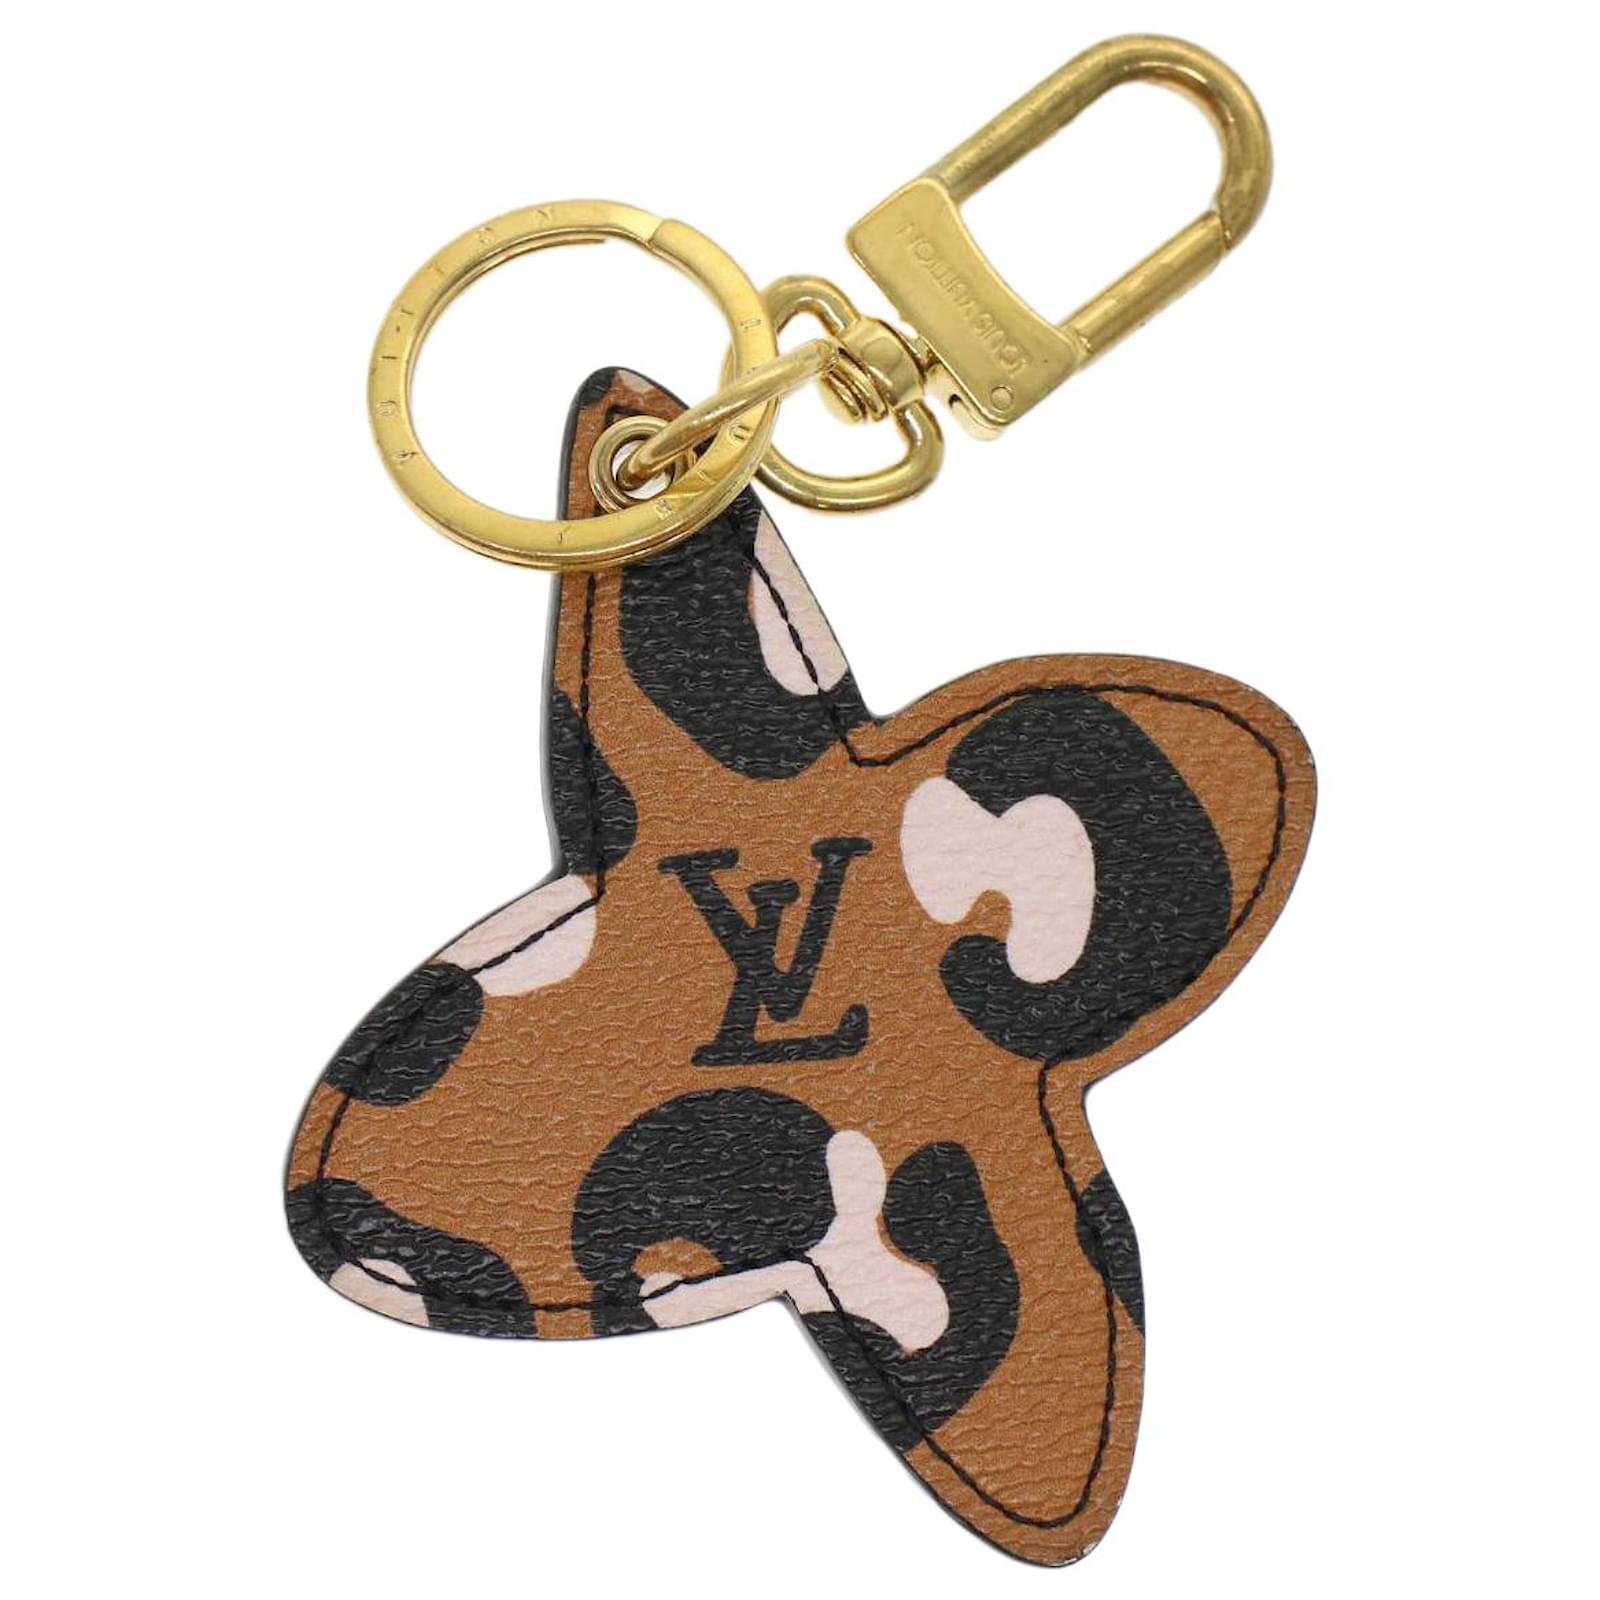 Louis Vuitton Damier Ebene Dragonne Key Holder - Brown Keychains